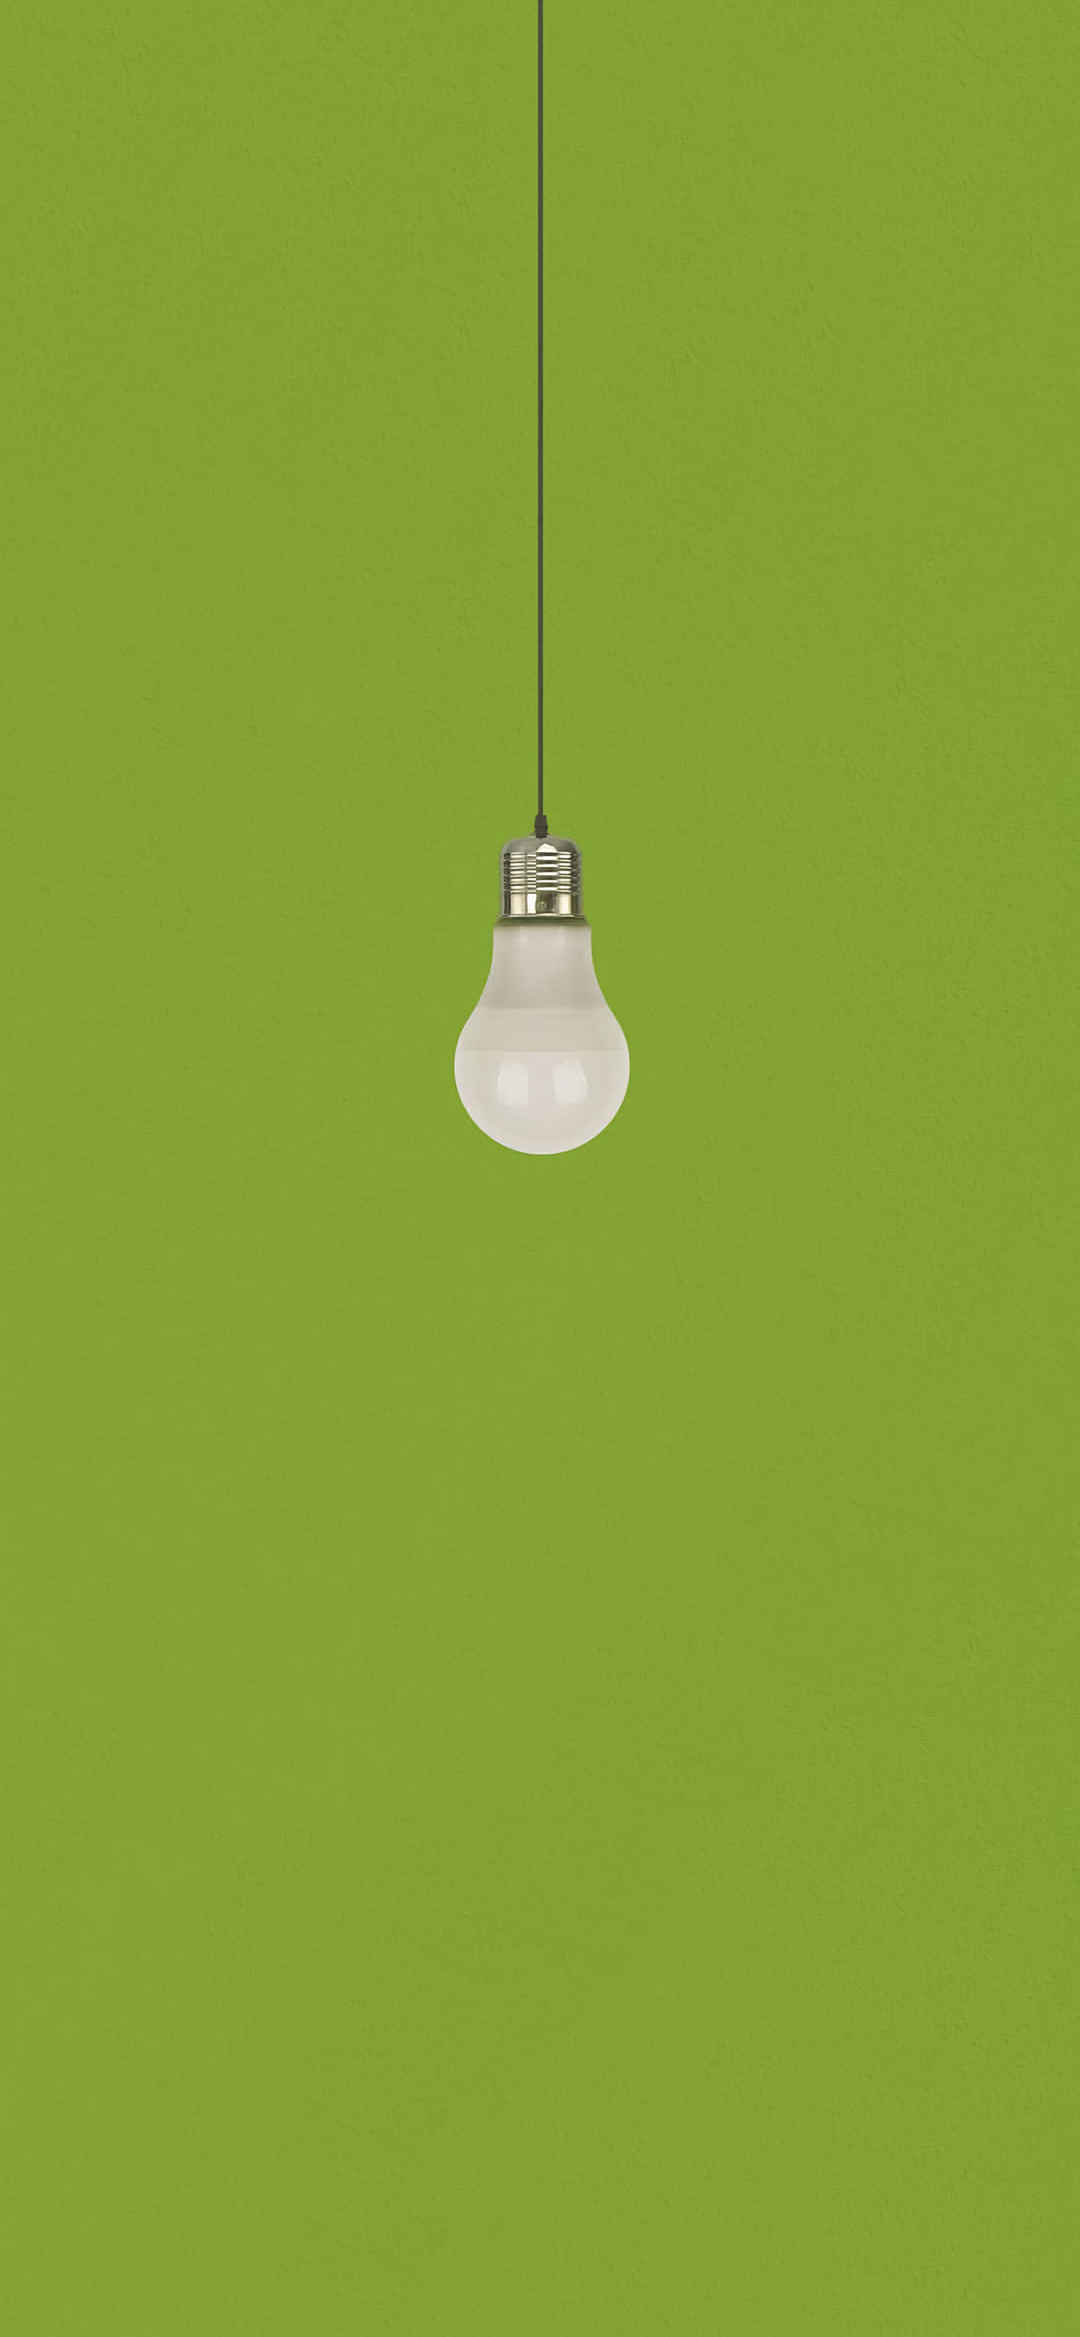 极简绿色背景灯泡创意质感壁纸